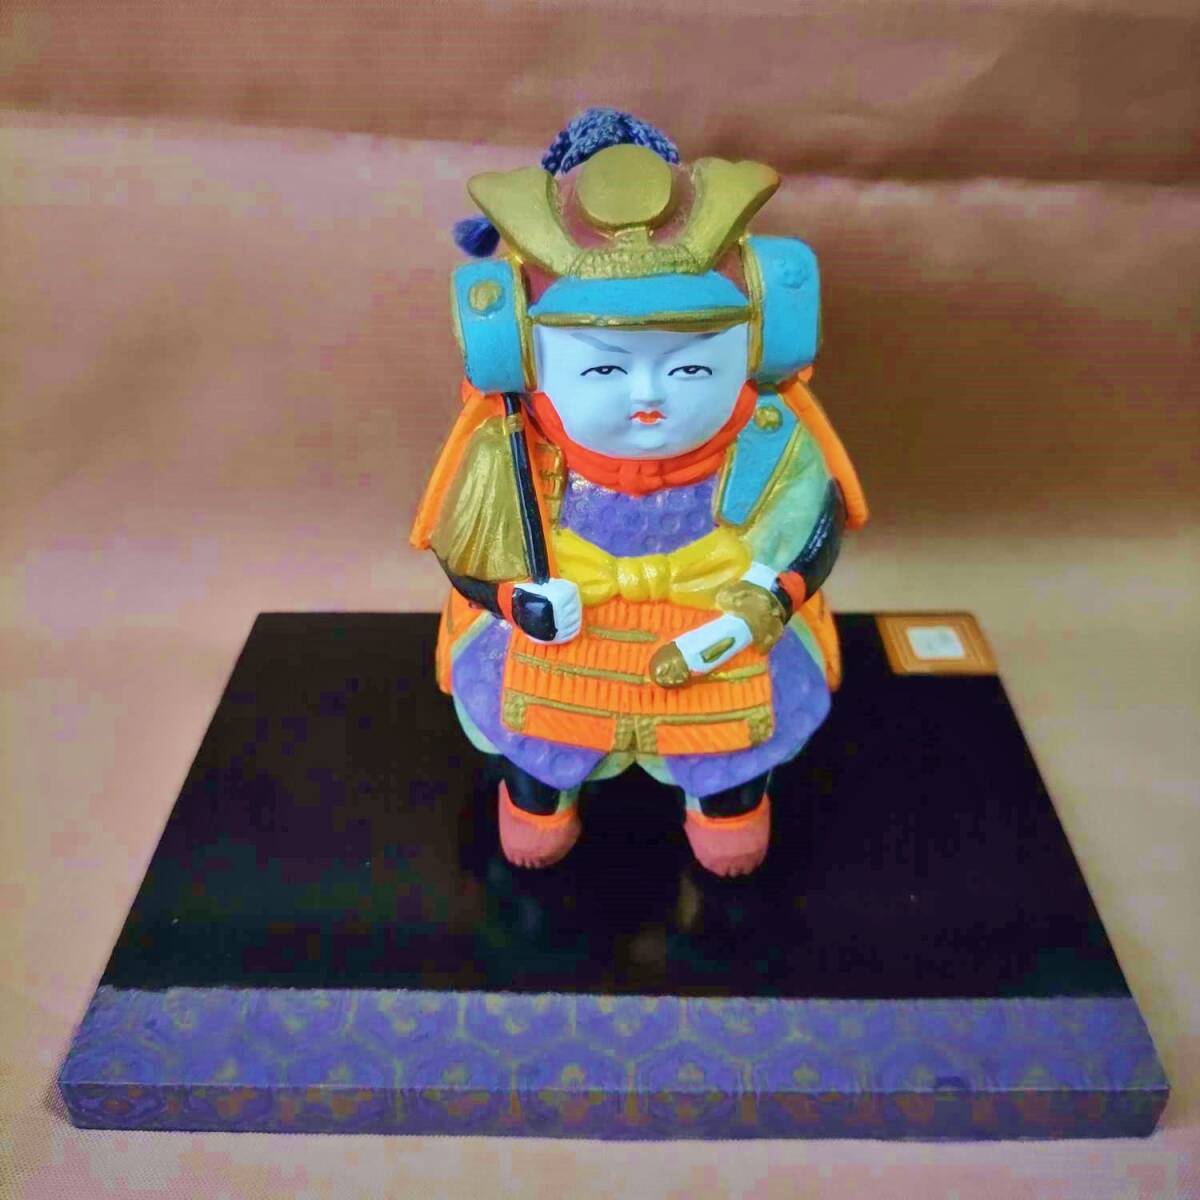 Hecho por Gokatsu Muñeca Gokatsu Samurai Campana de tierra/Casco de armadura samurai Festival para niños Campana samurai Hecho por Gokatsu Crafts Día del niño, estación, Evento anual, día del Niño, muñeca de mayo